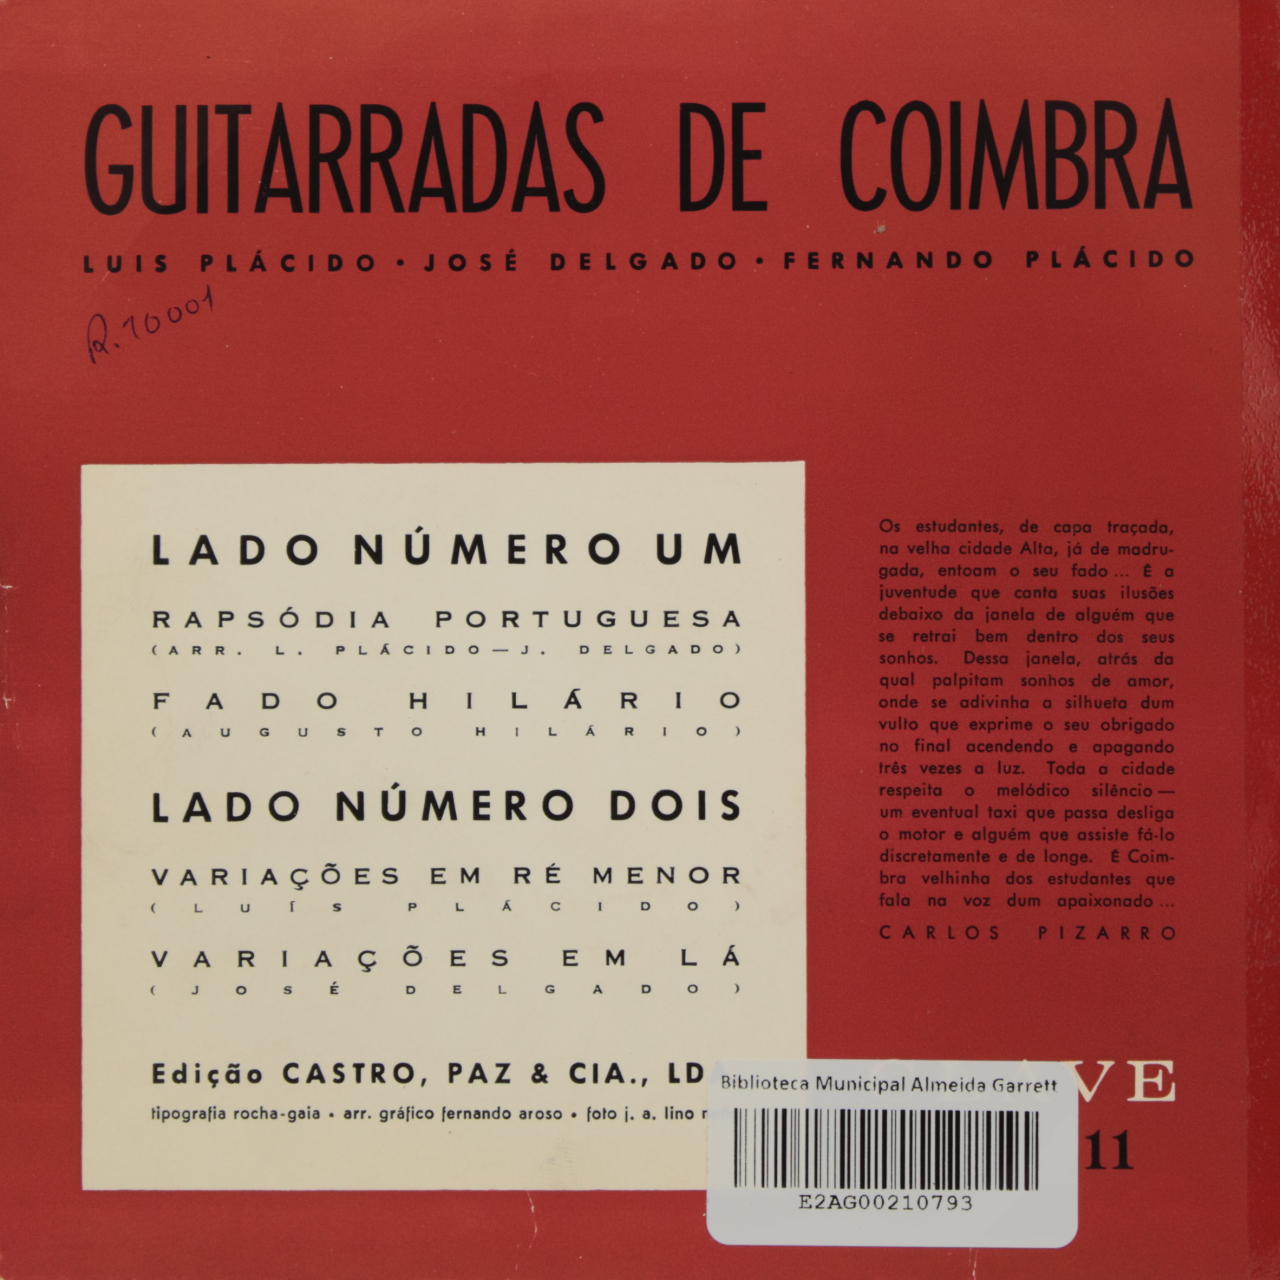 Guitarradas de Coimbra